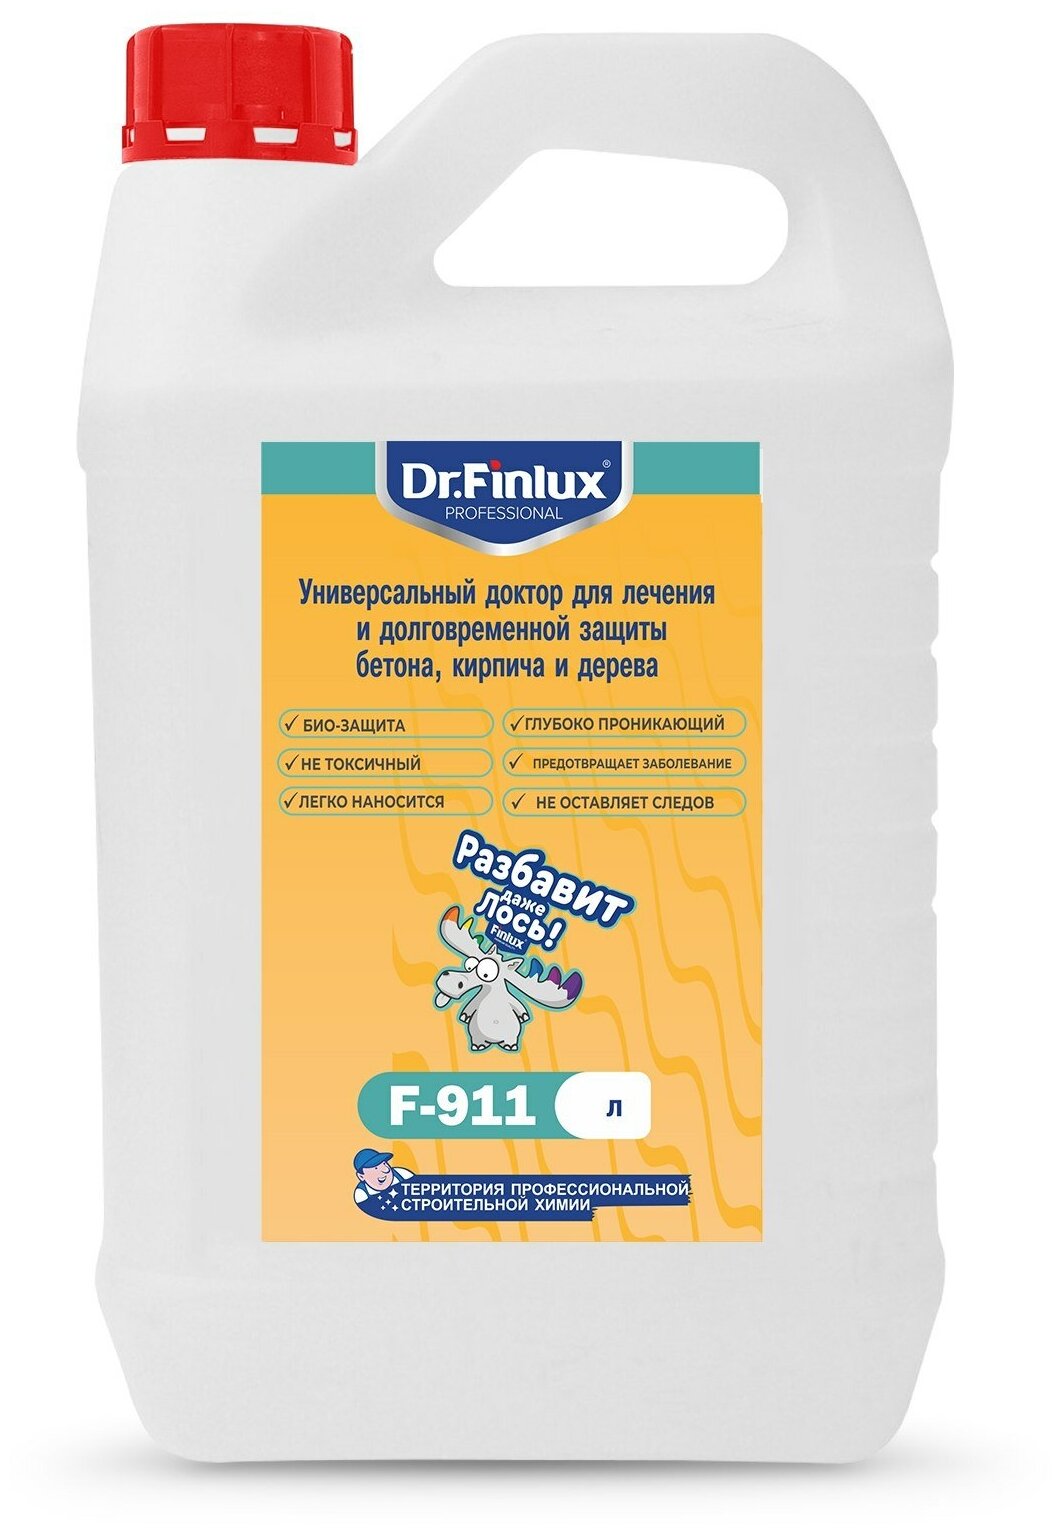 Dr.Finlux F-911. Универсальный доктор для лечения и долговременной защиты бетона кирпича и дерева. 5кг.